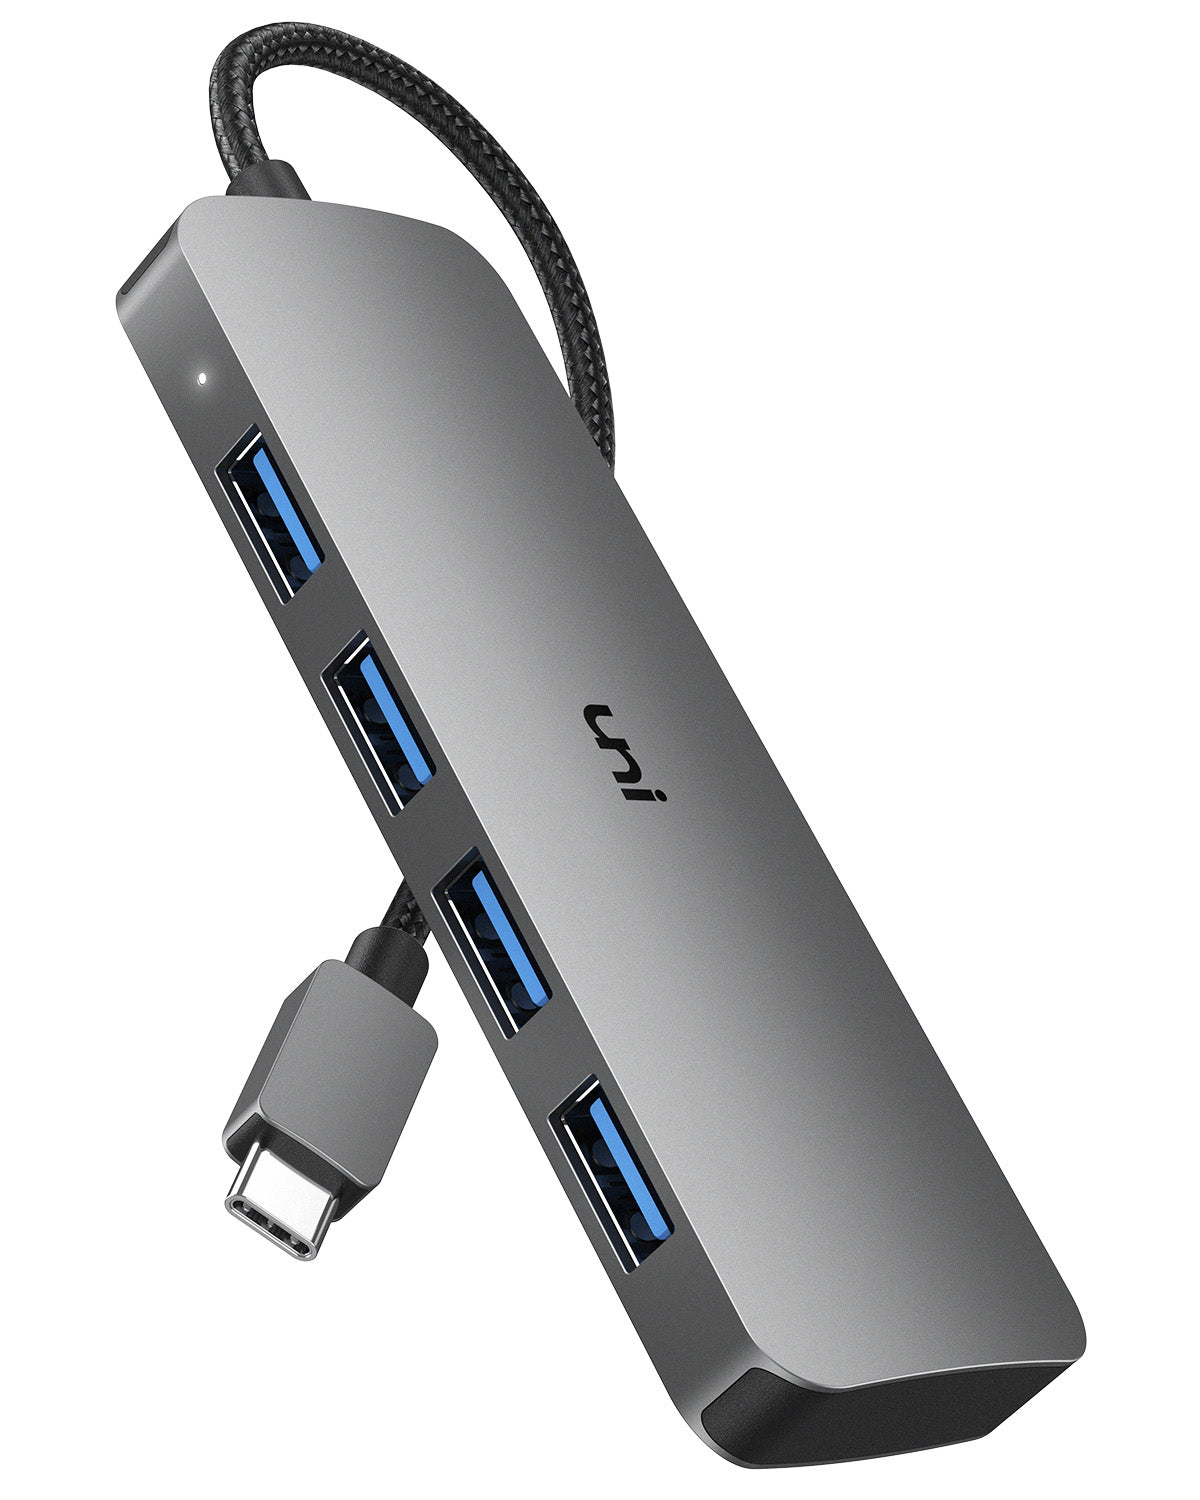 USB C ハブ、USB 3.0 アダプター x 4、Thunderbolt 4 互換 | 彼®